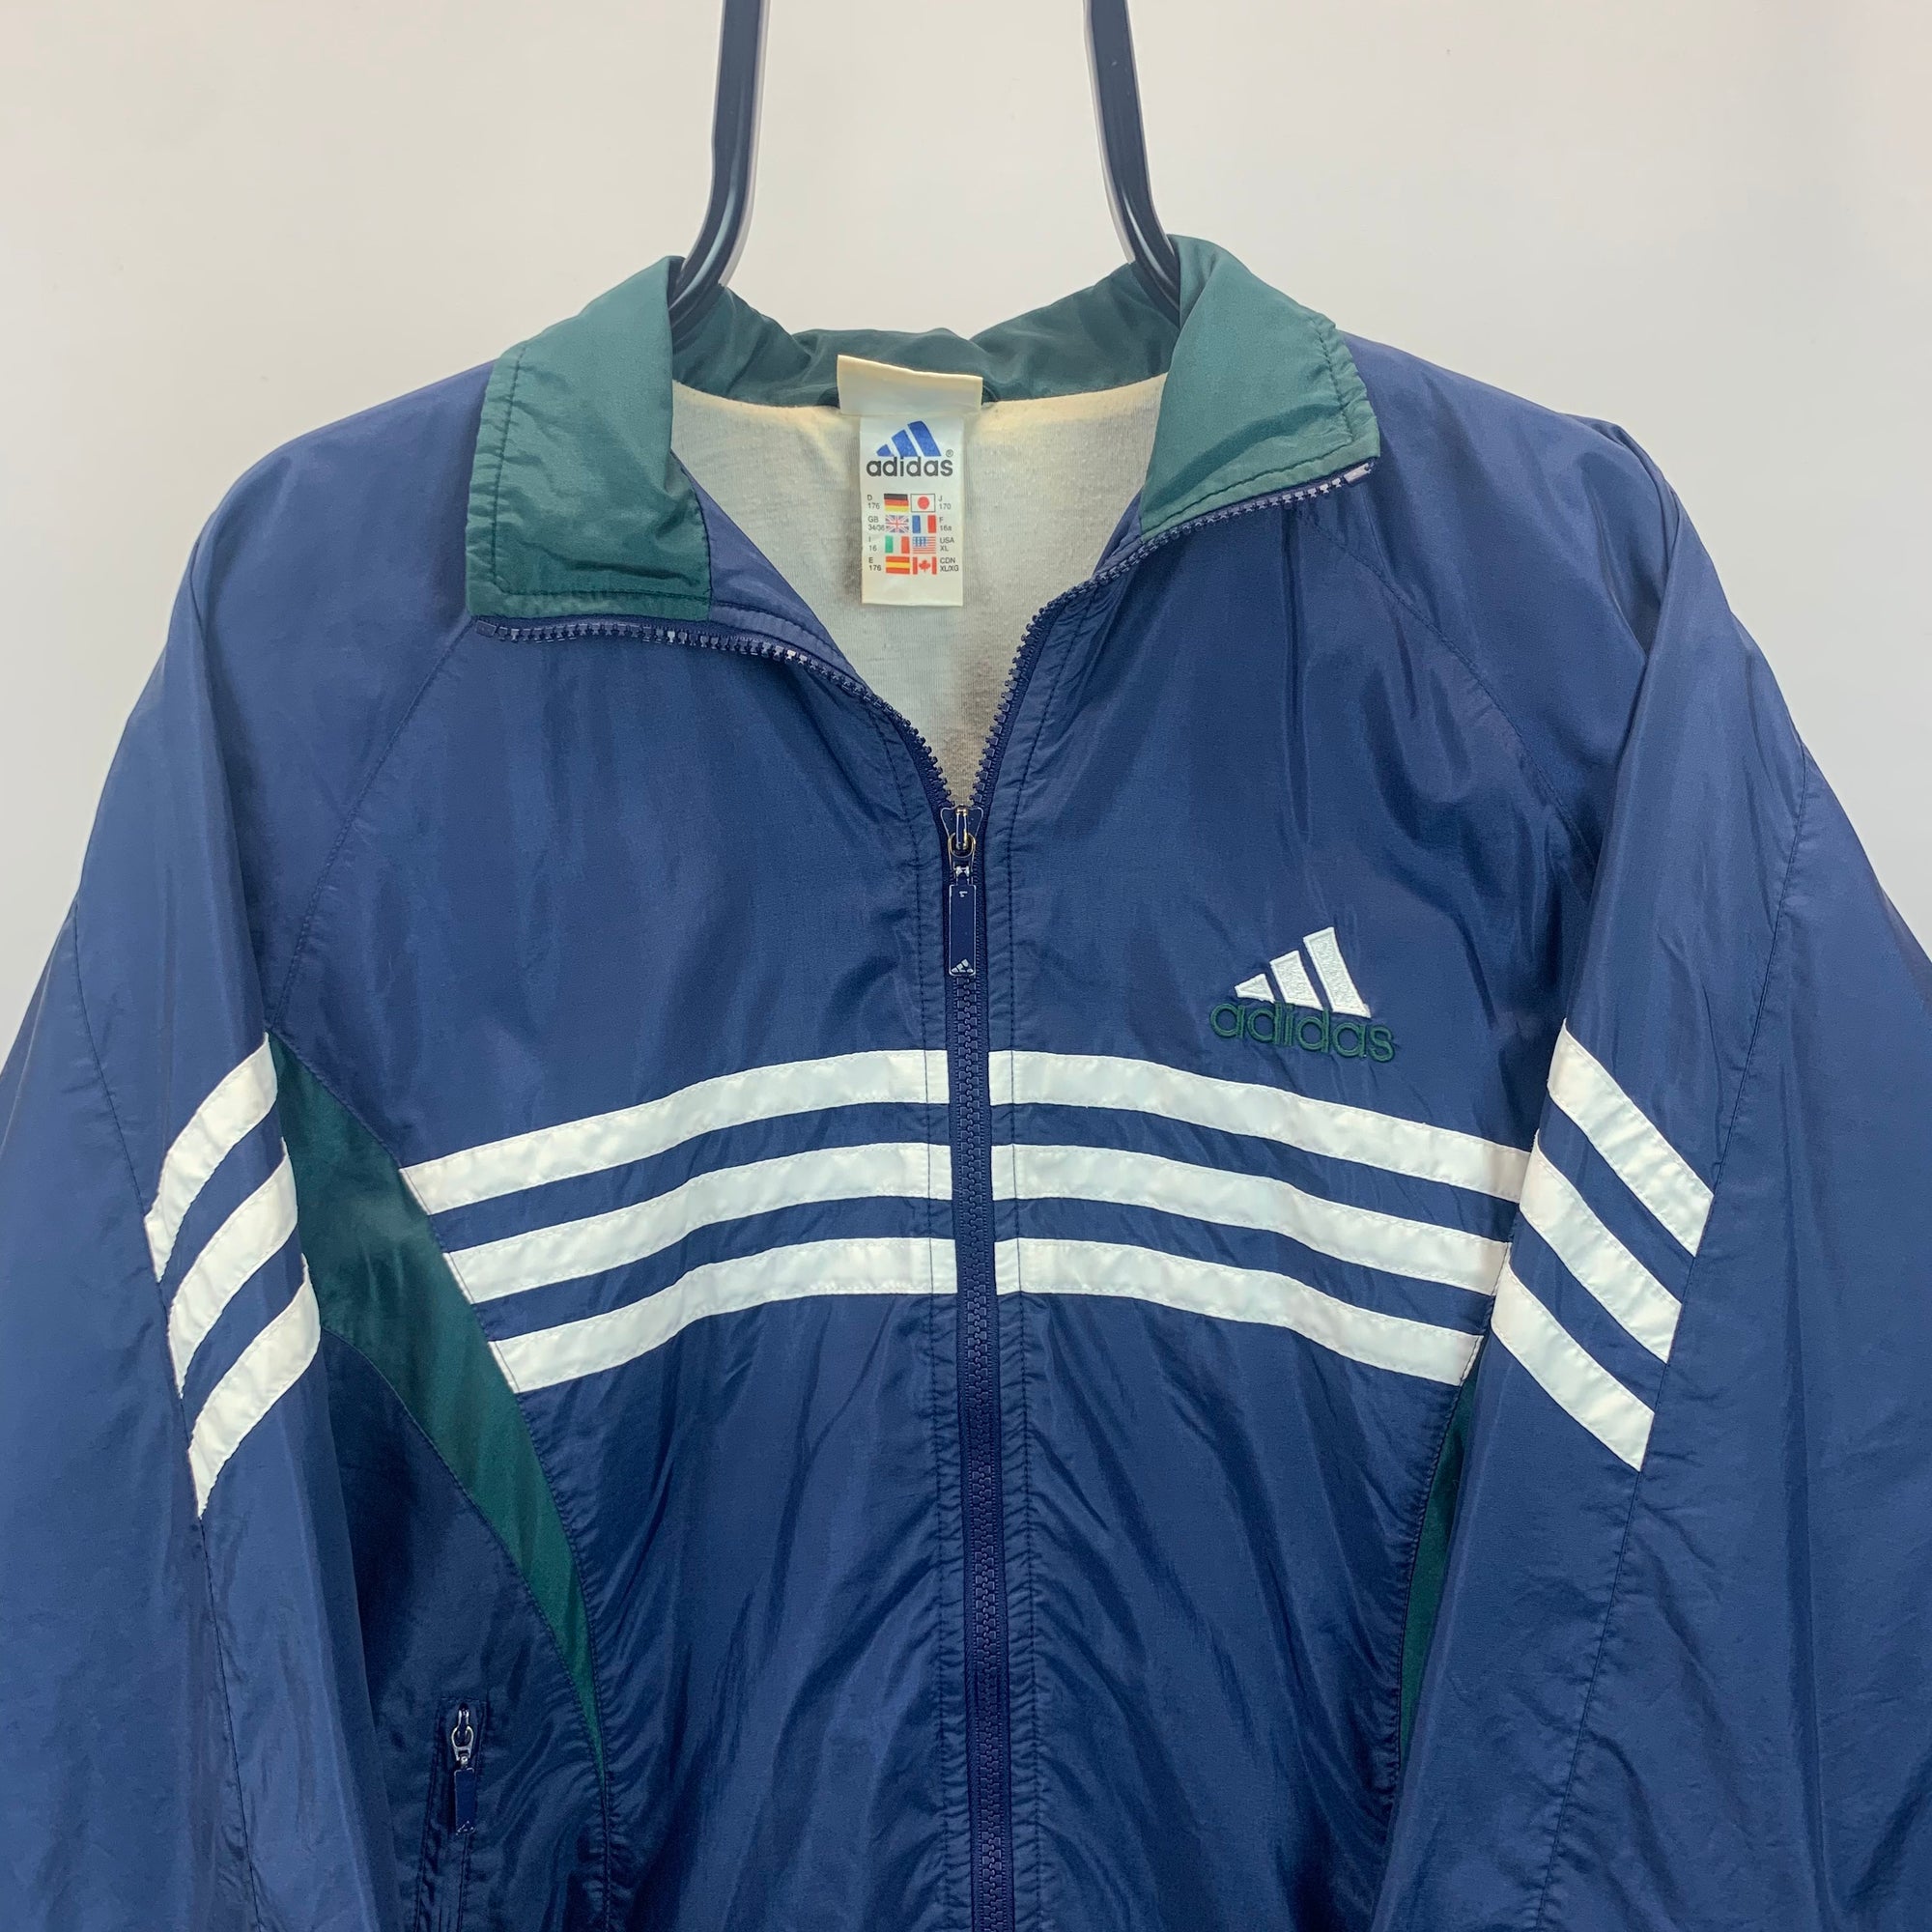 Vintage 90s Adidas Track Jacket in Navy/Green - Men's Small/Women's Medium